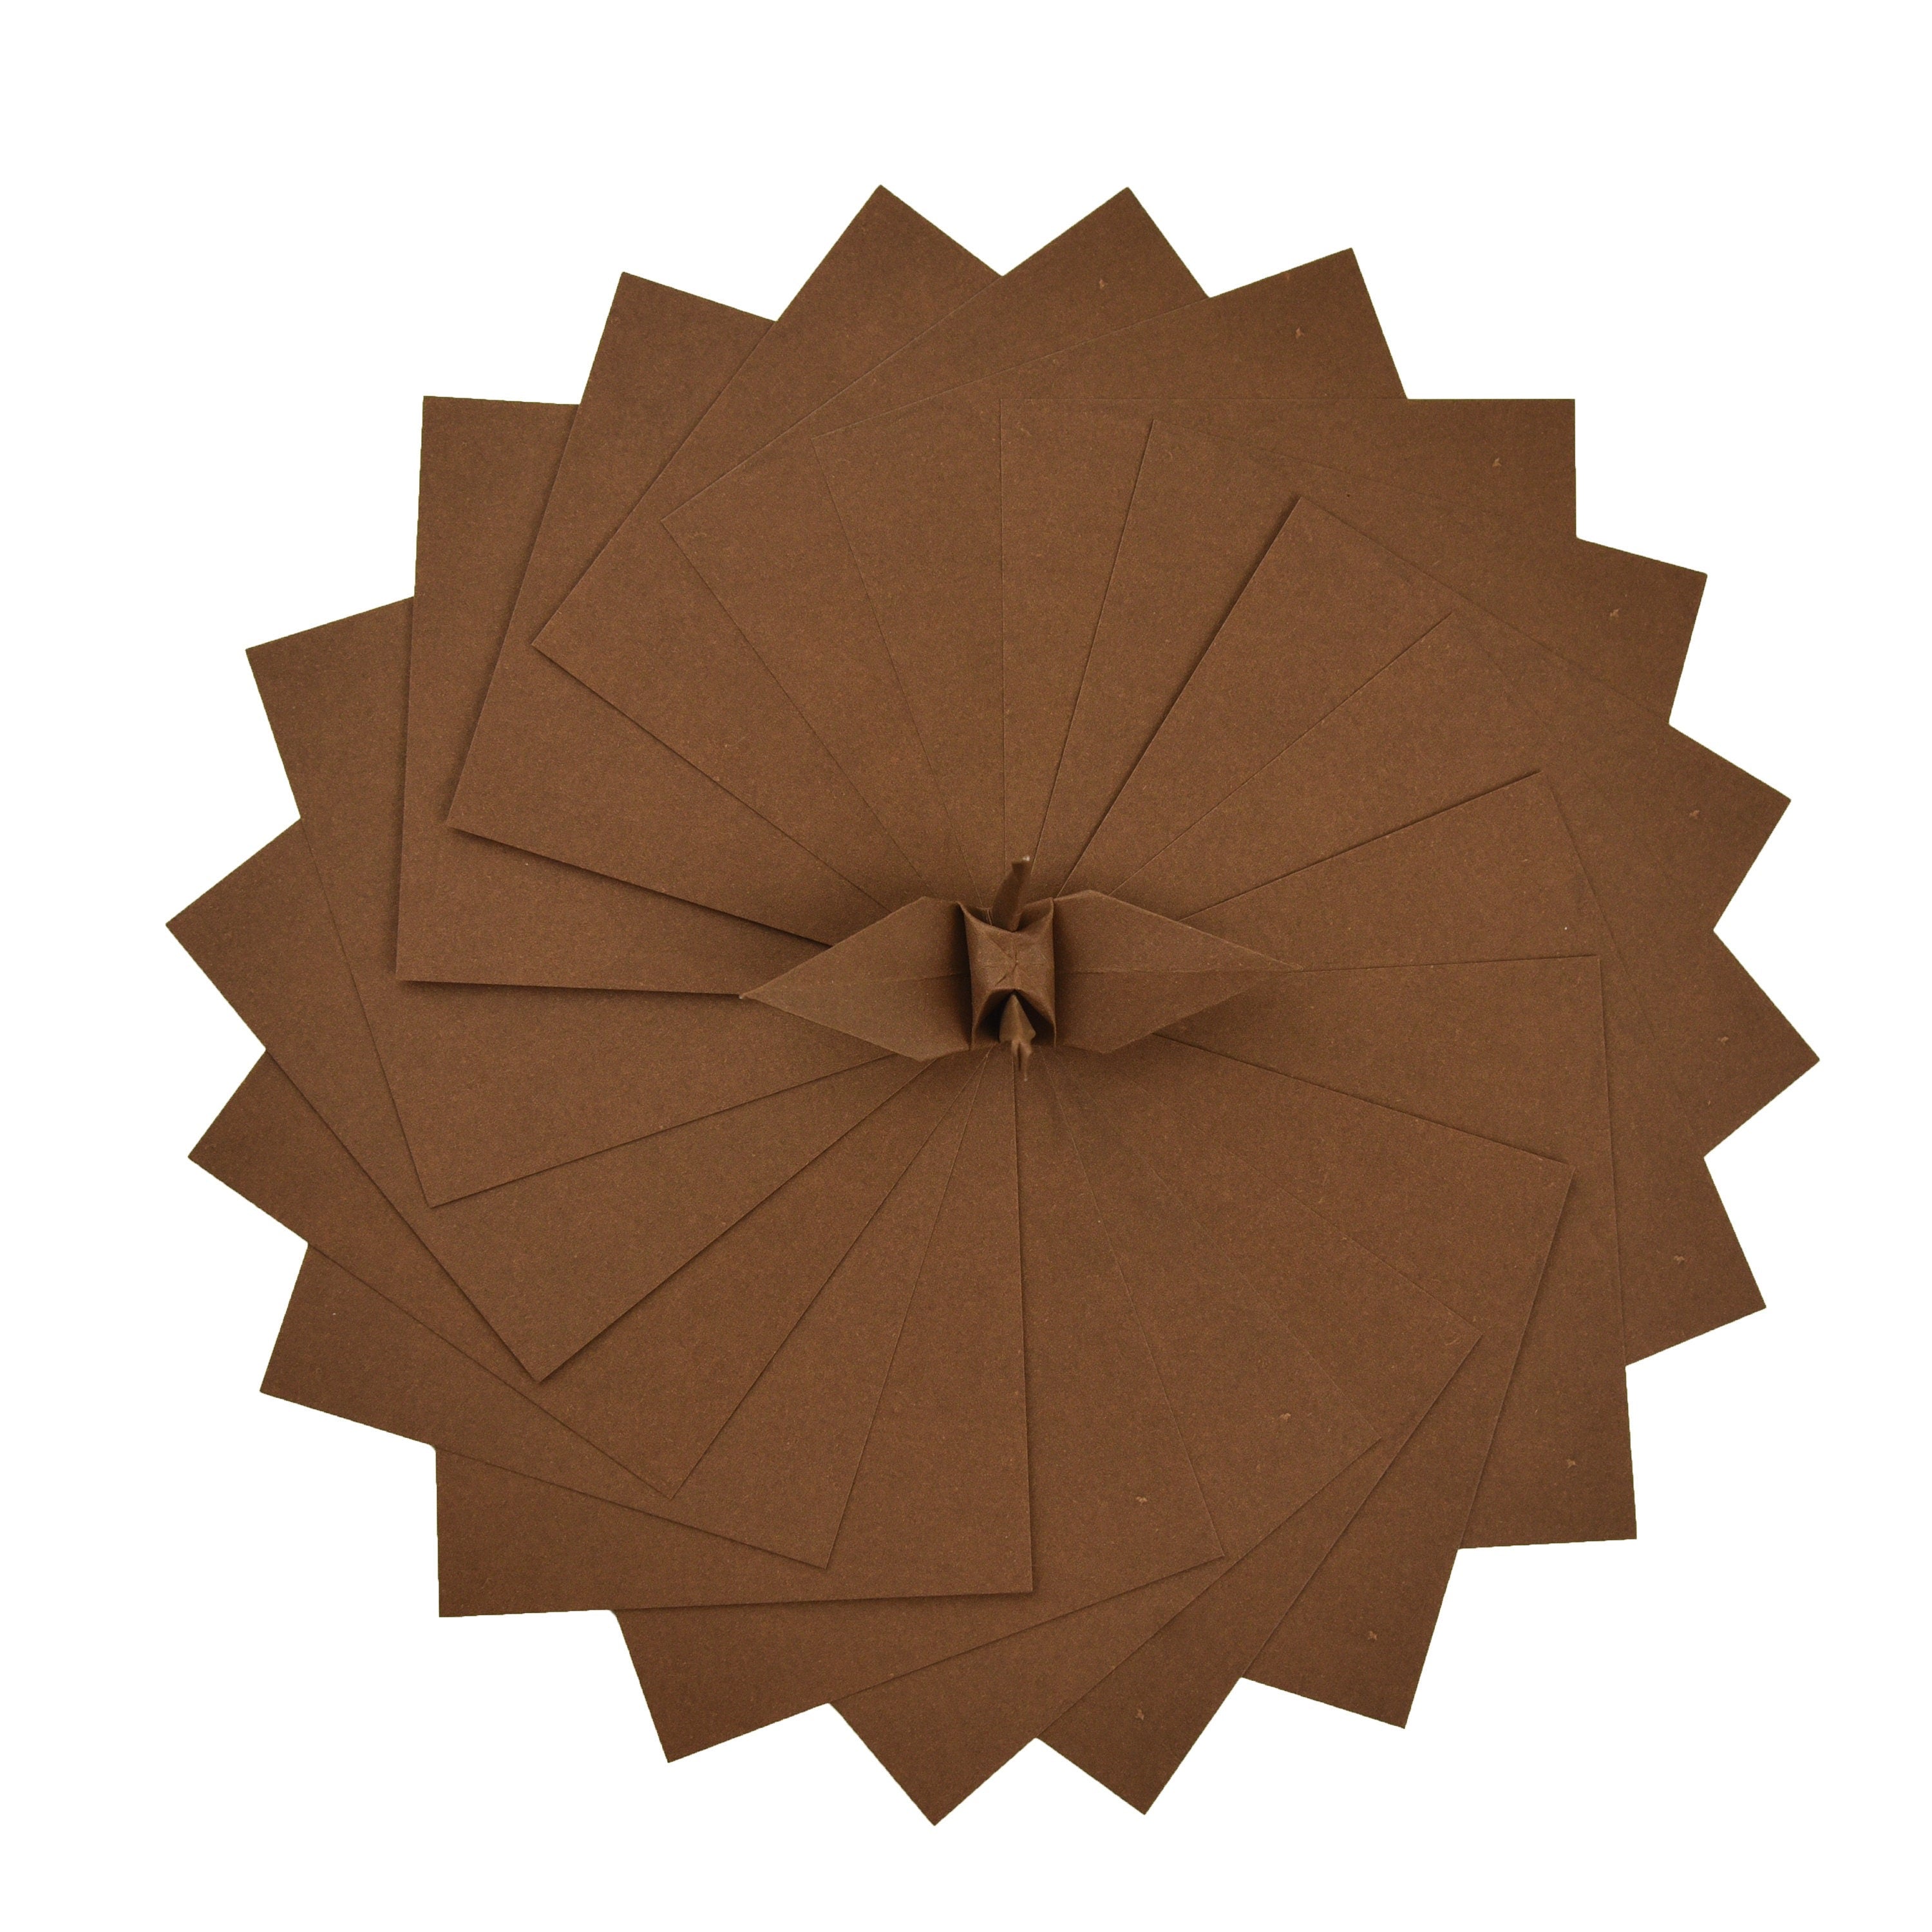 100 Hojas de Papel Origami Marrón - 6x6 pulgadas - Paquete de Papel Cuadrado para Plegar, Grullas de Origami y Decoración - S07